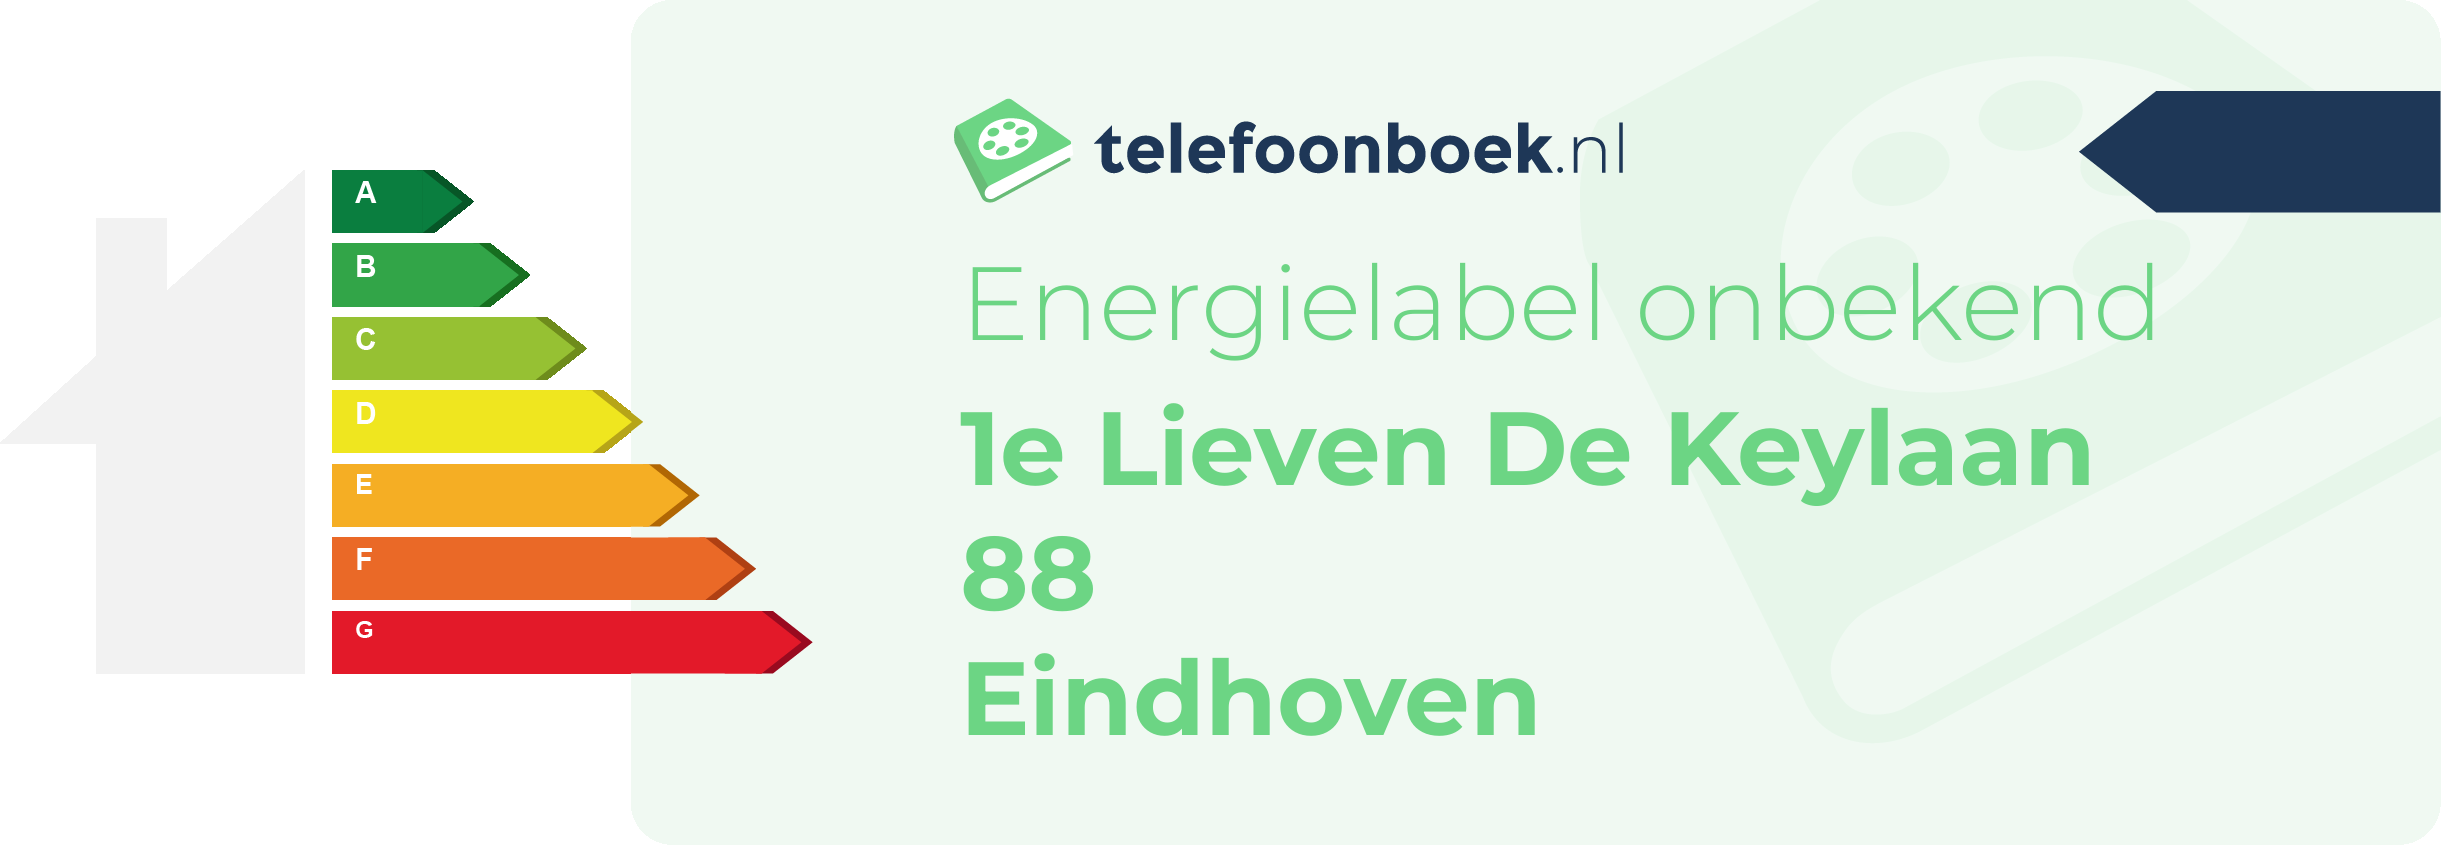 Energielabel 1e Lieven De Keylaan 88 Eindhoven